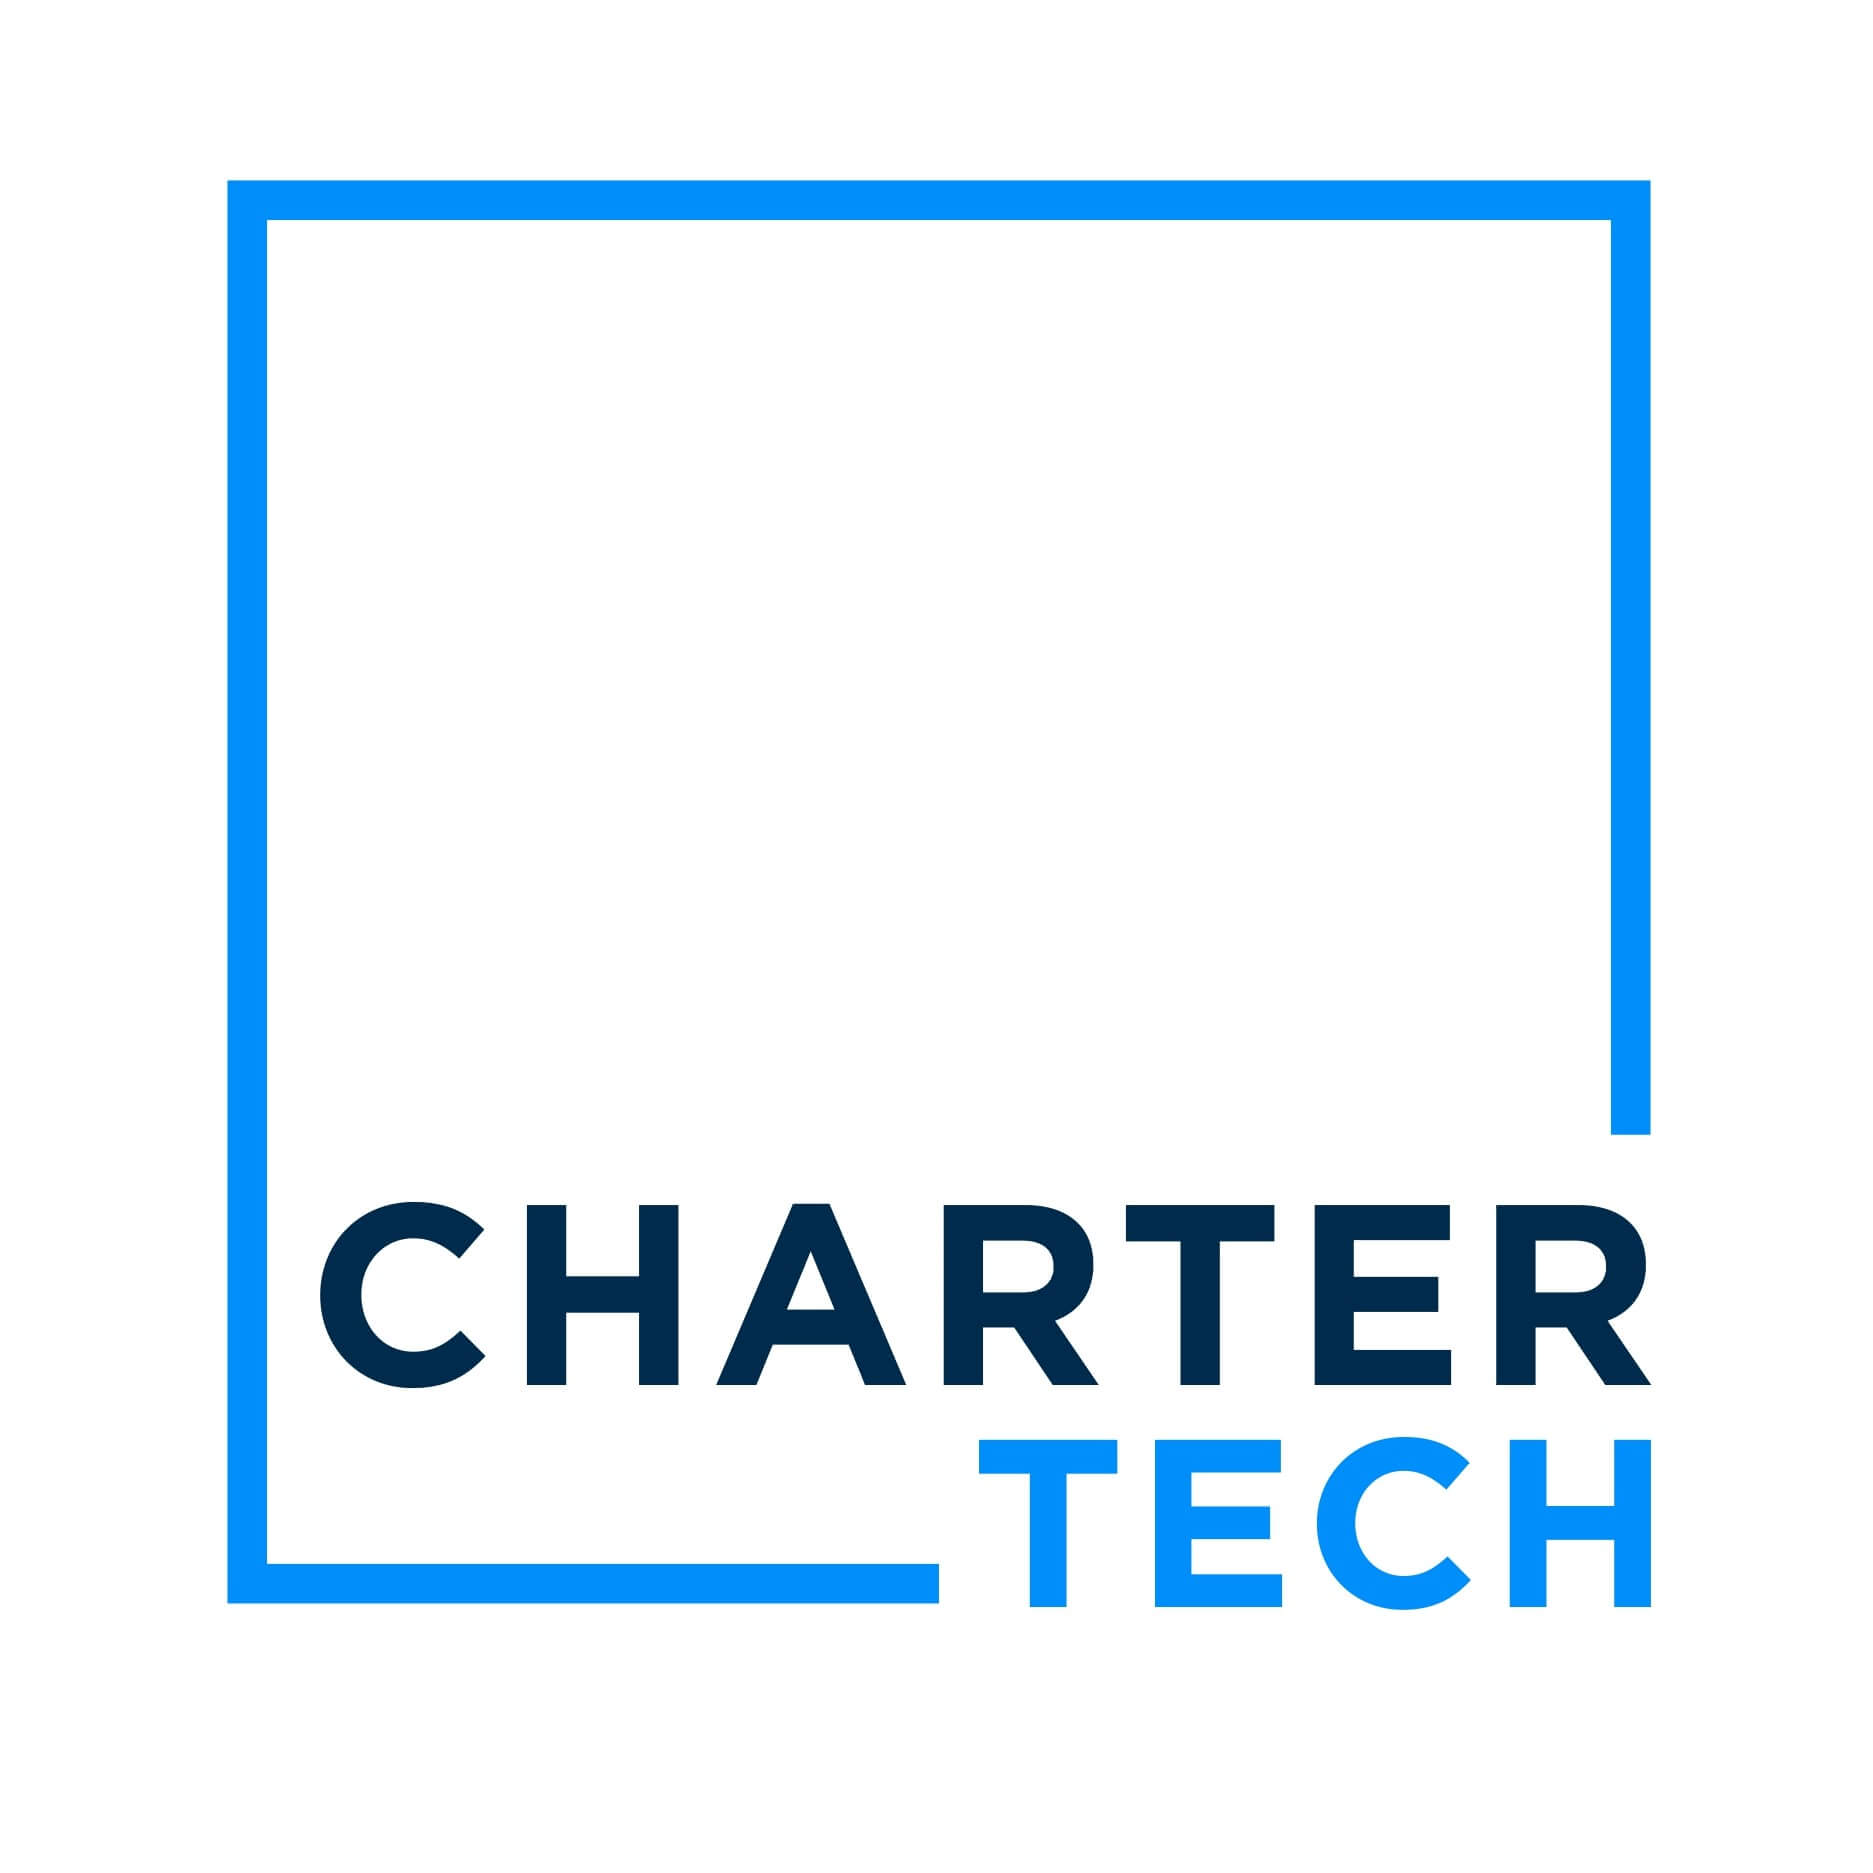 Chartertech_logo